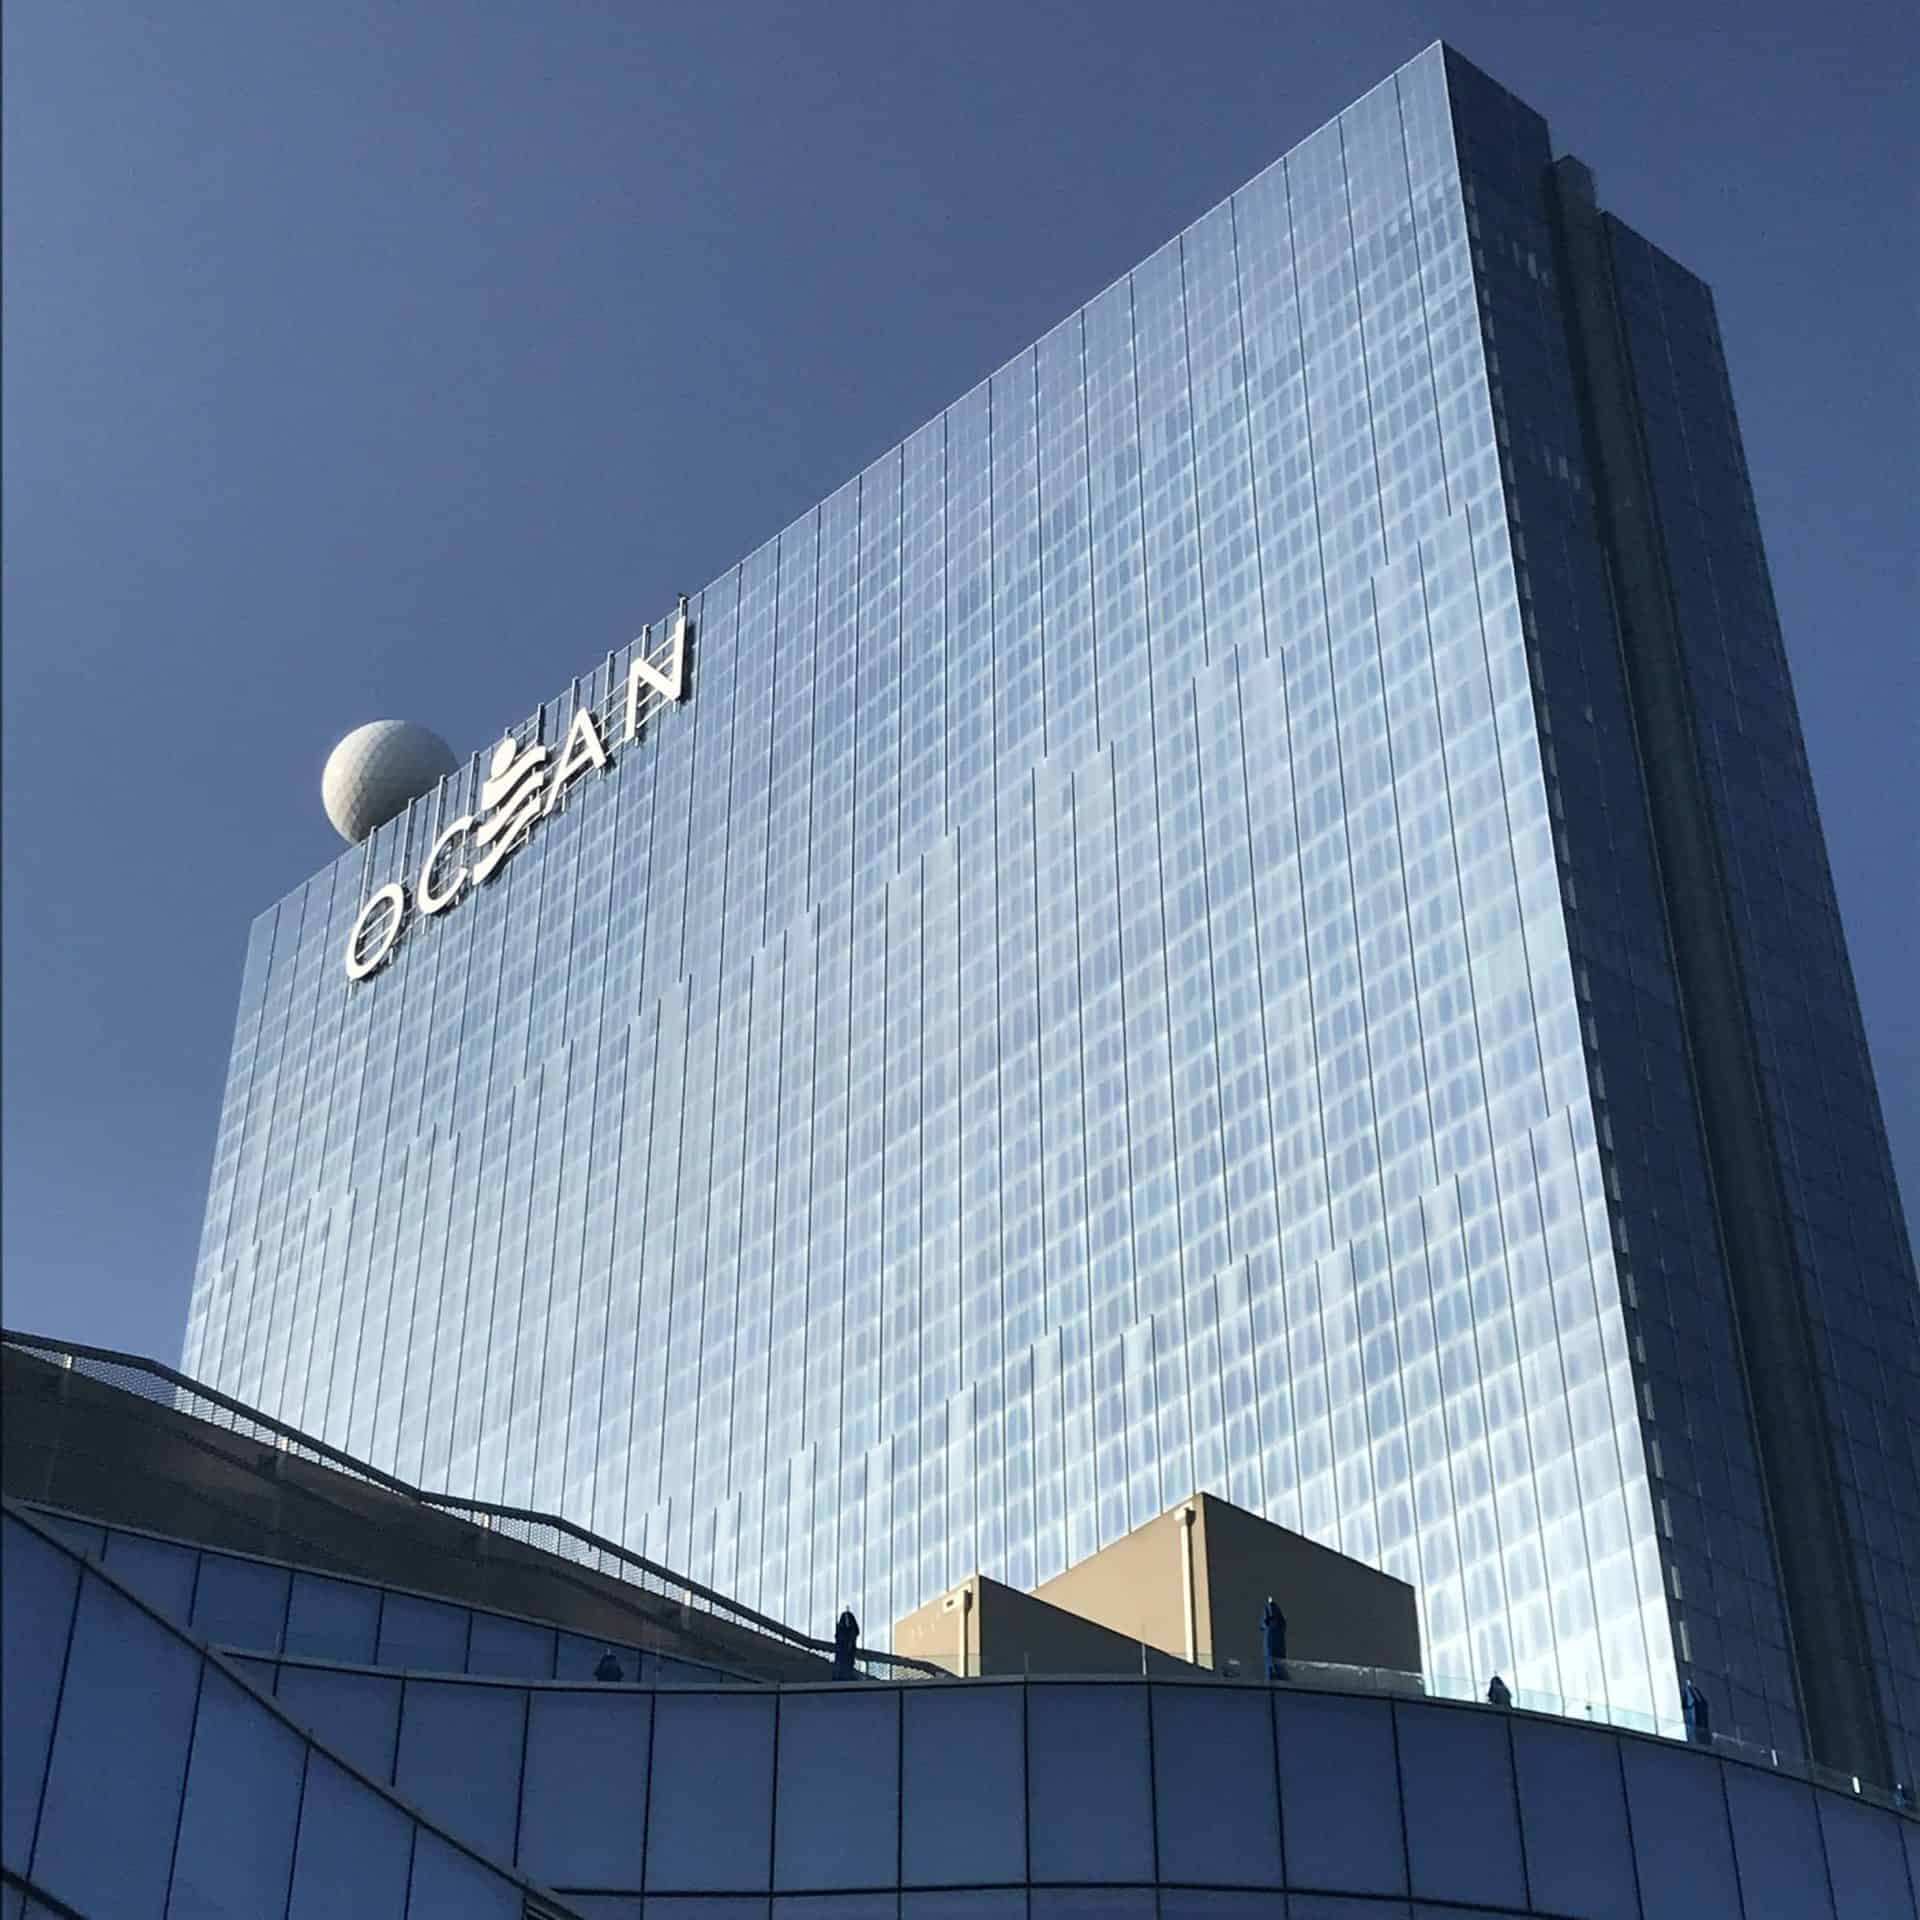 ocean resorts casino in atlantic city